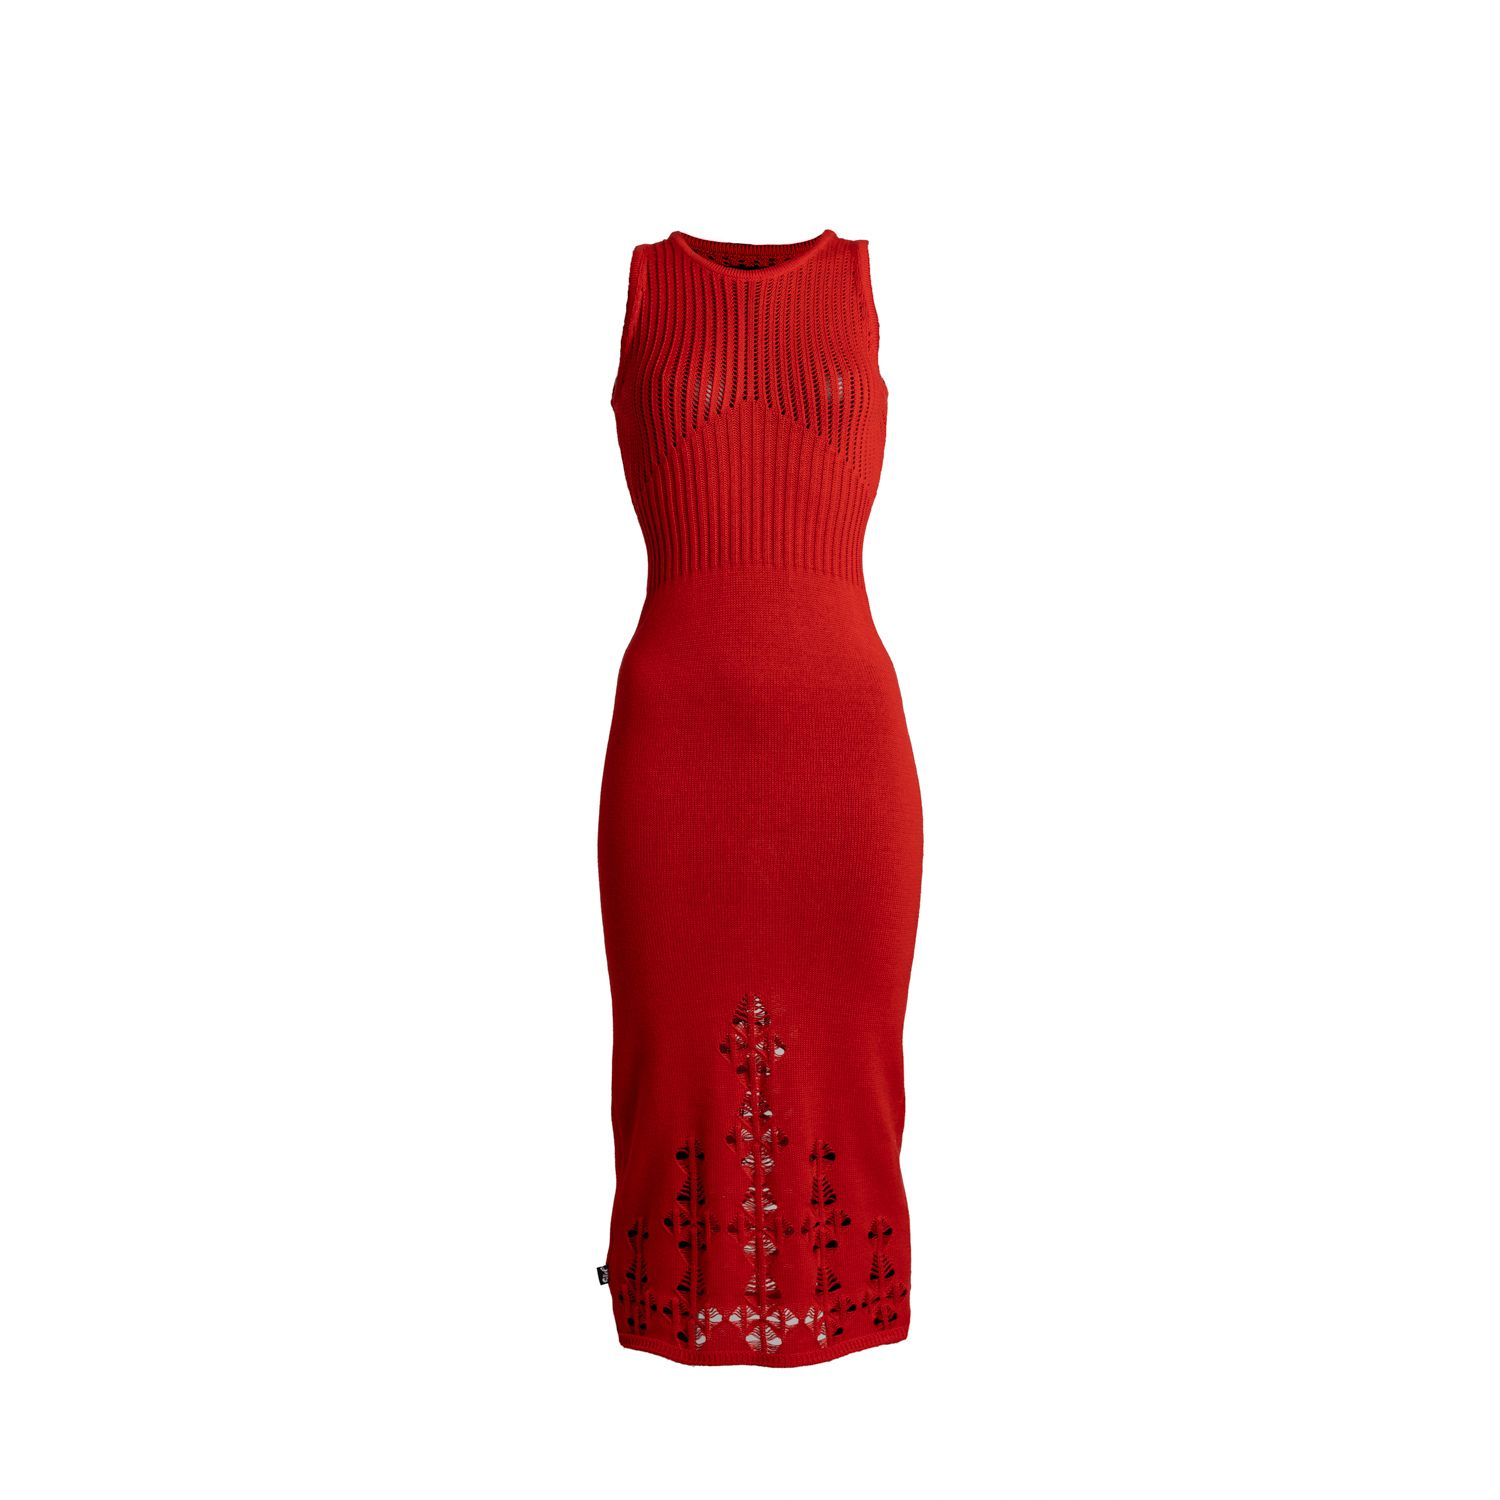 Women’s Chris Dress Paprika Red One Size Süel Knitwear